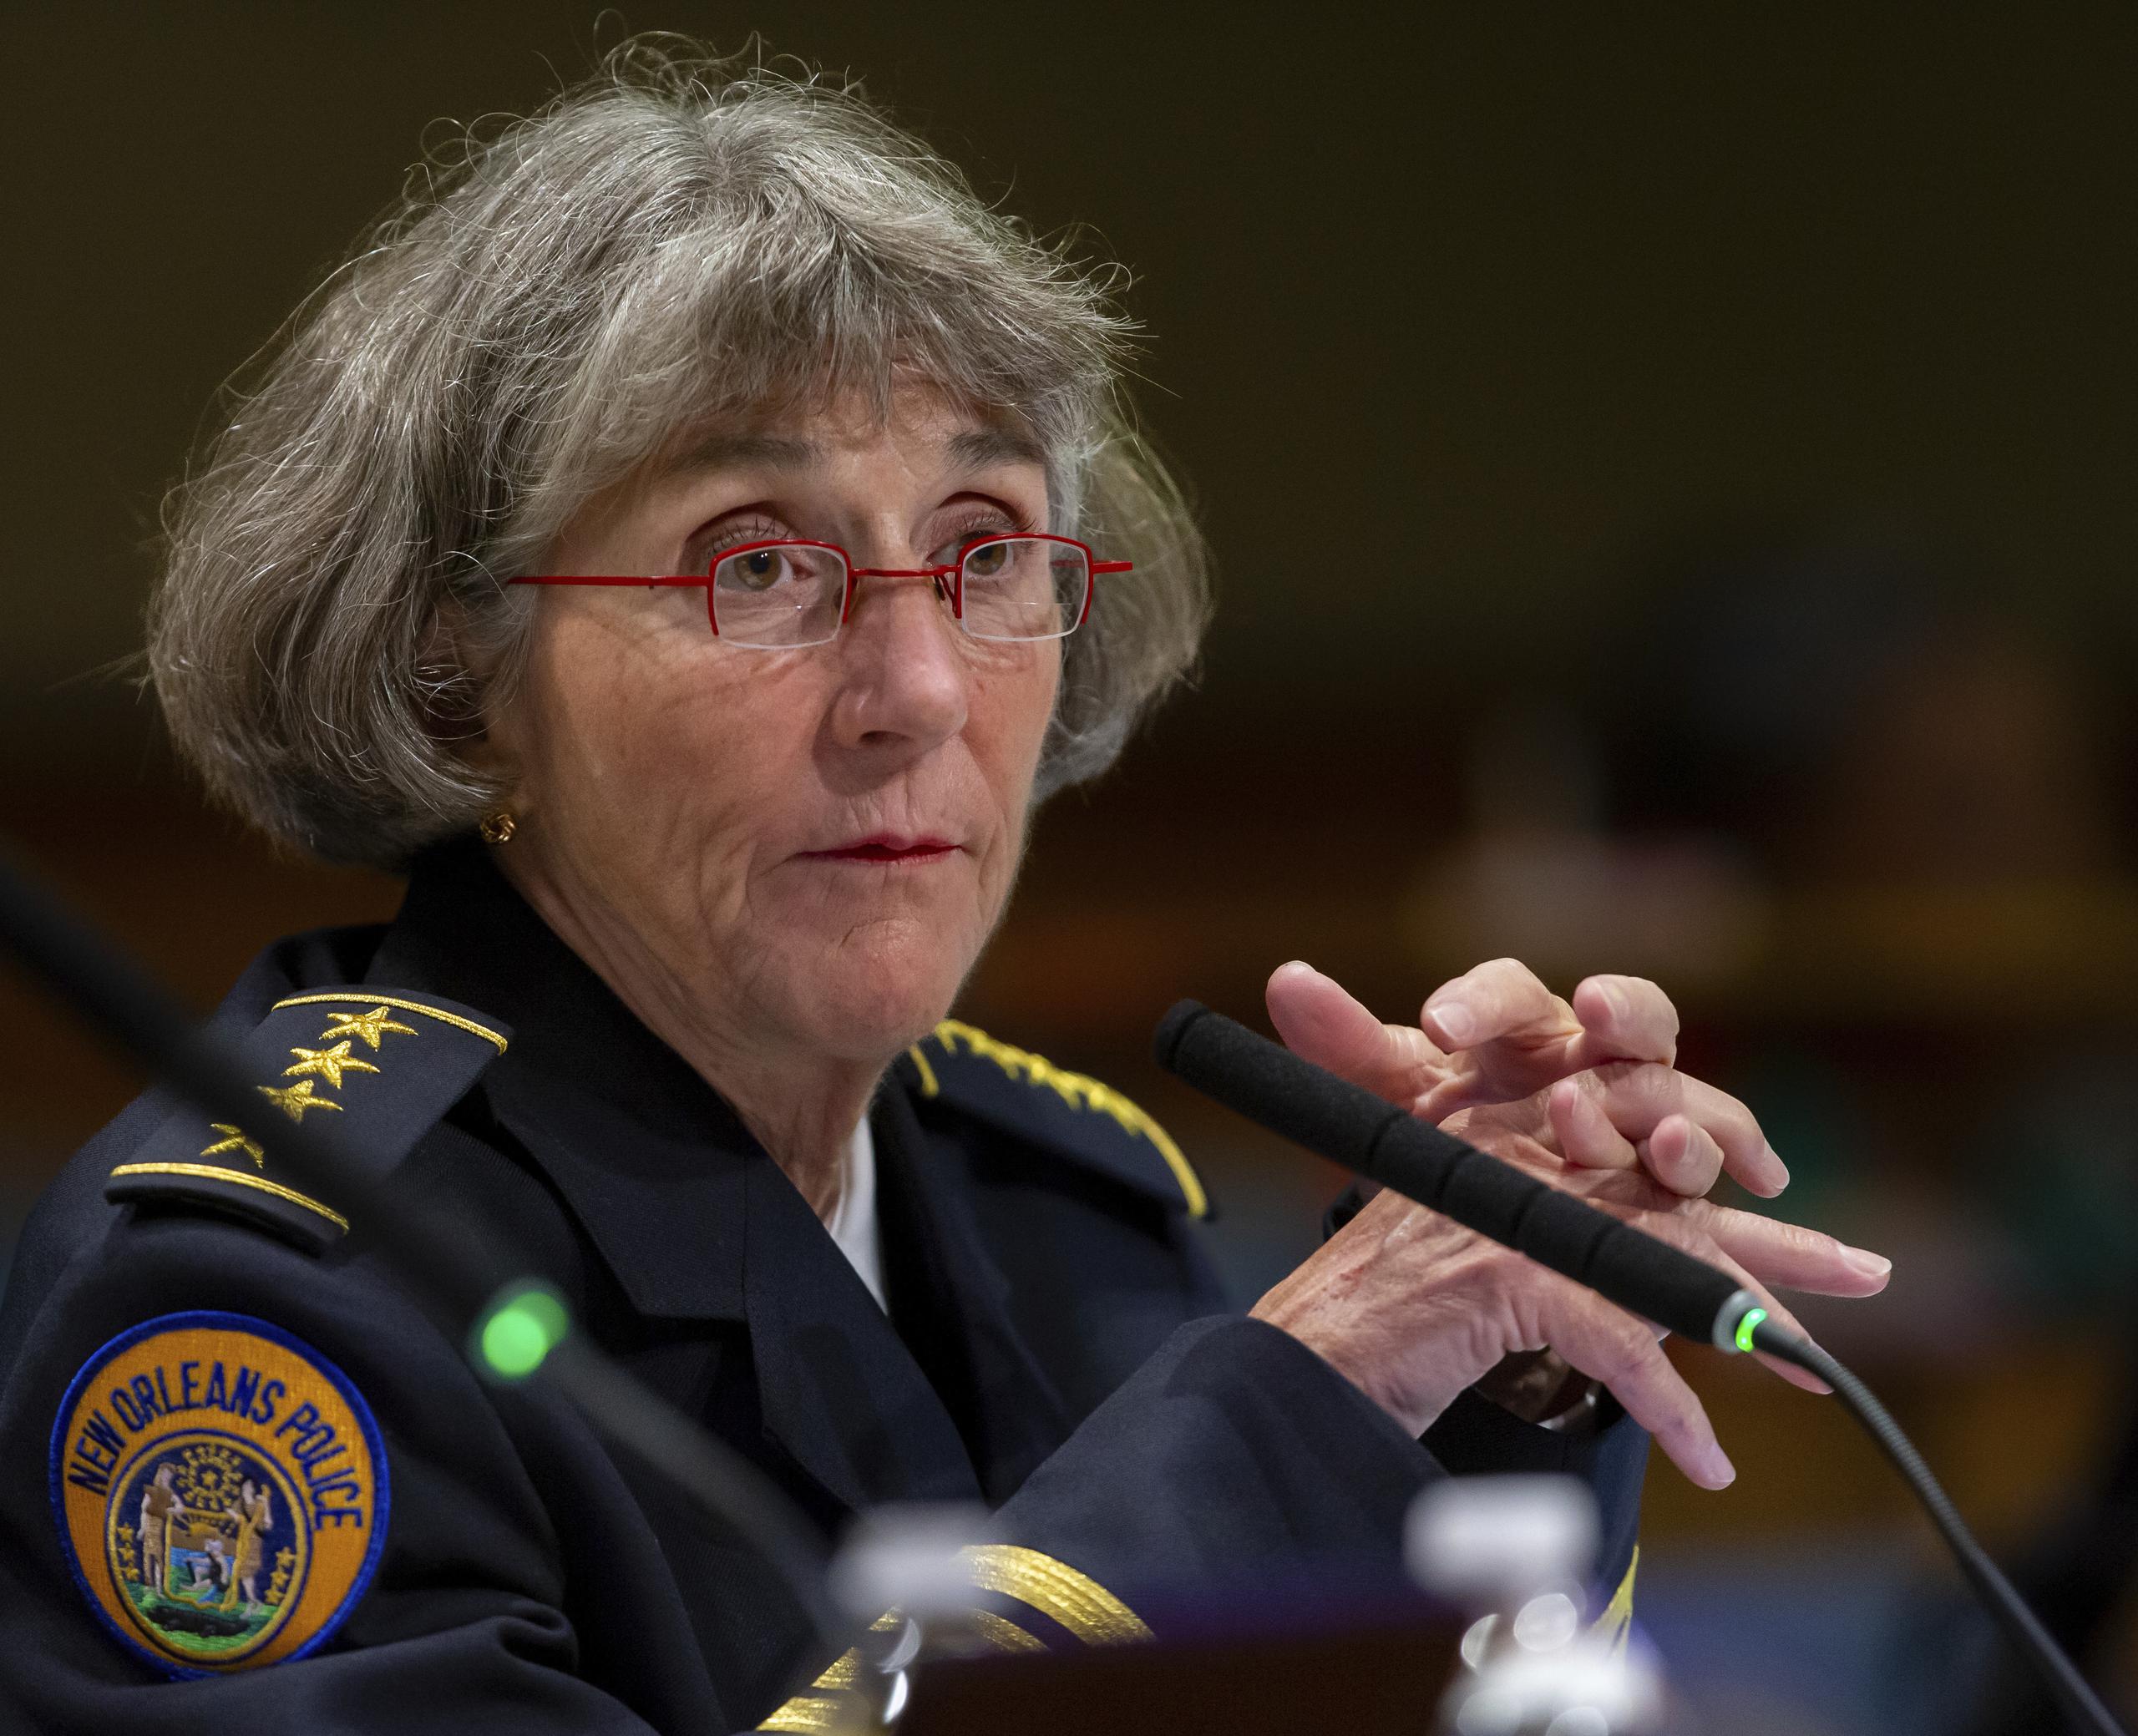 La superintendente de la Policia de Nueva Orleans, Anne Kirkpatrick, habló sobre el estado de deterioro que enfrenta la sede de la Policía ante el consejo de la ciudad.